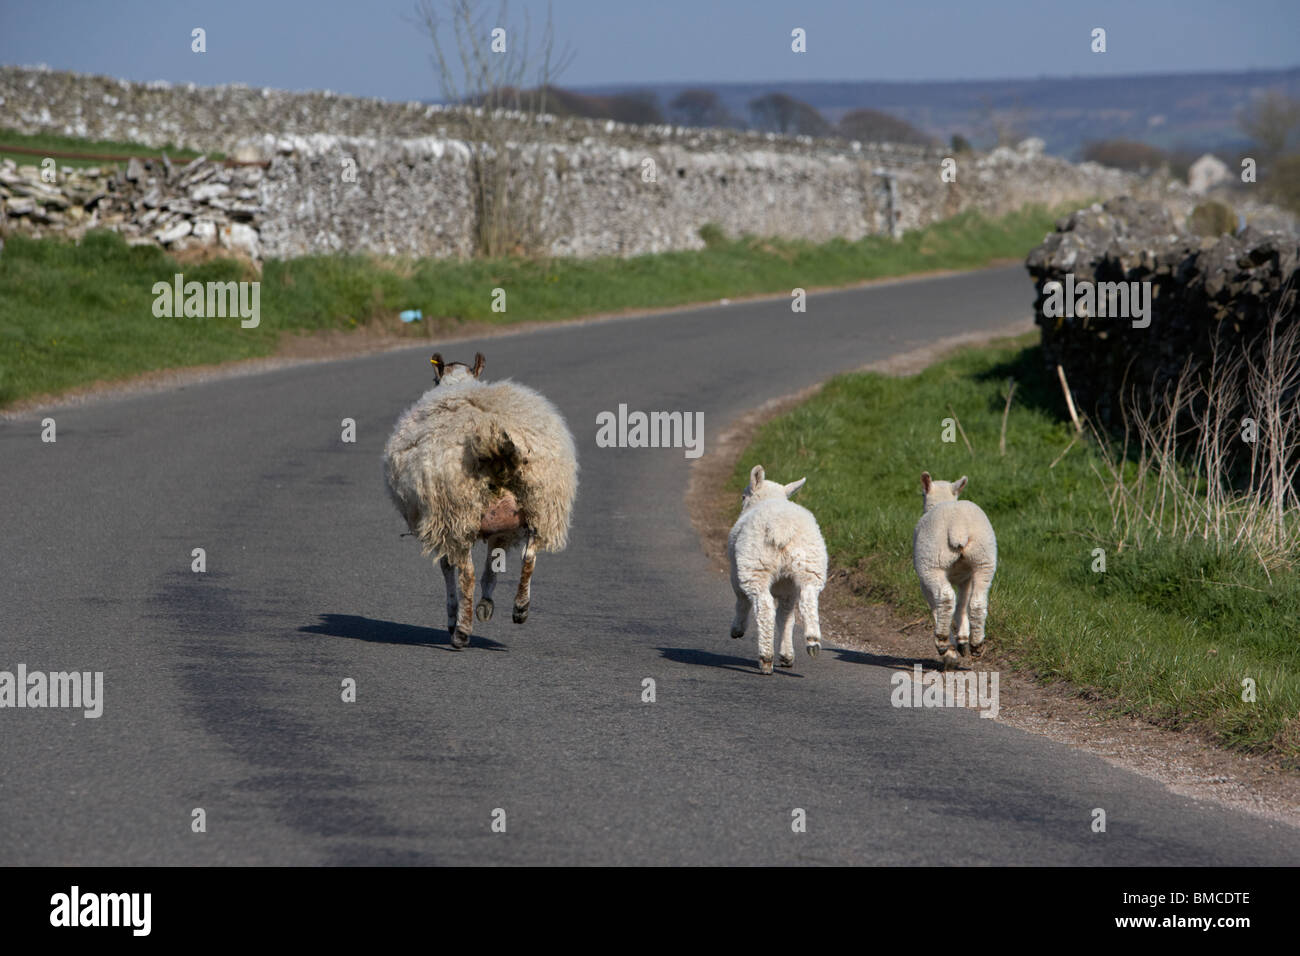 Deux agneaux et brebis en marche sur une route dans le Derbyshire Dales Parc national de Peak District england uk Banque D'Images